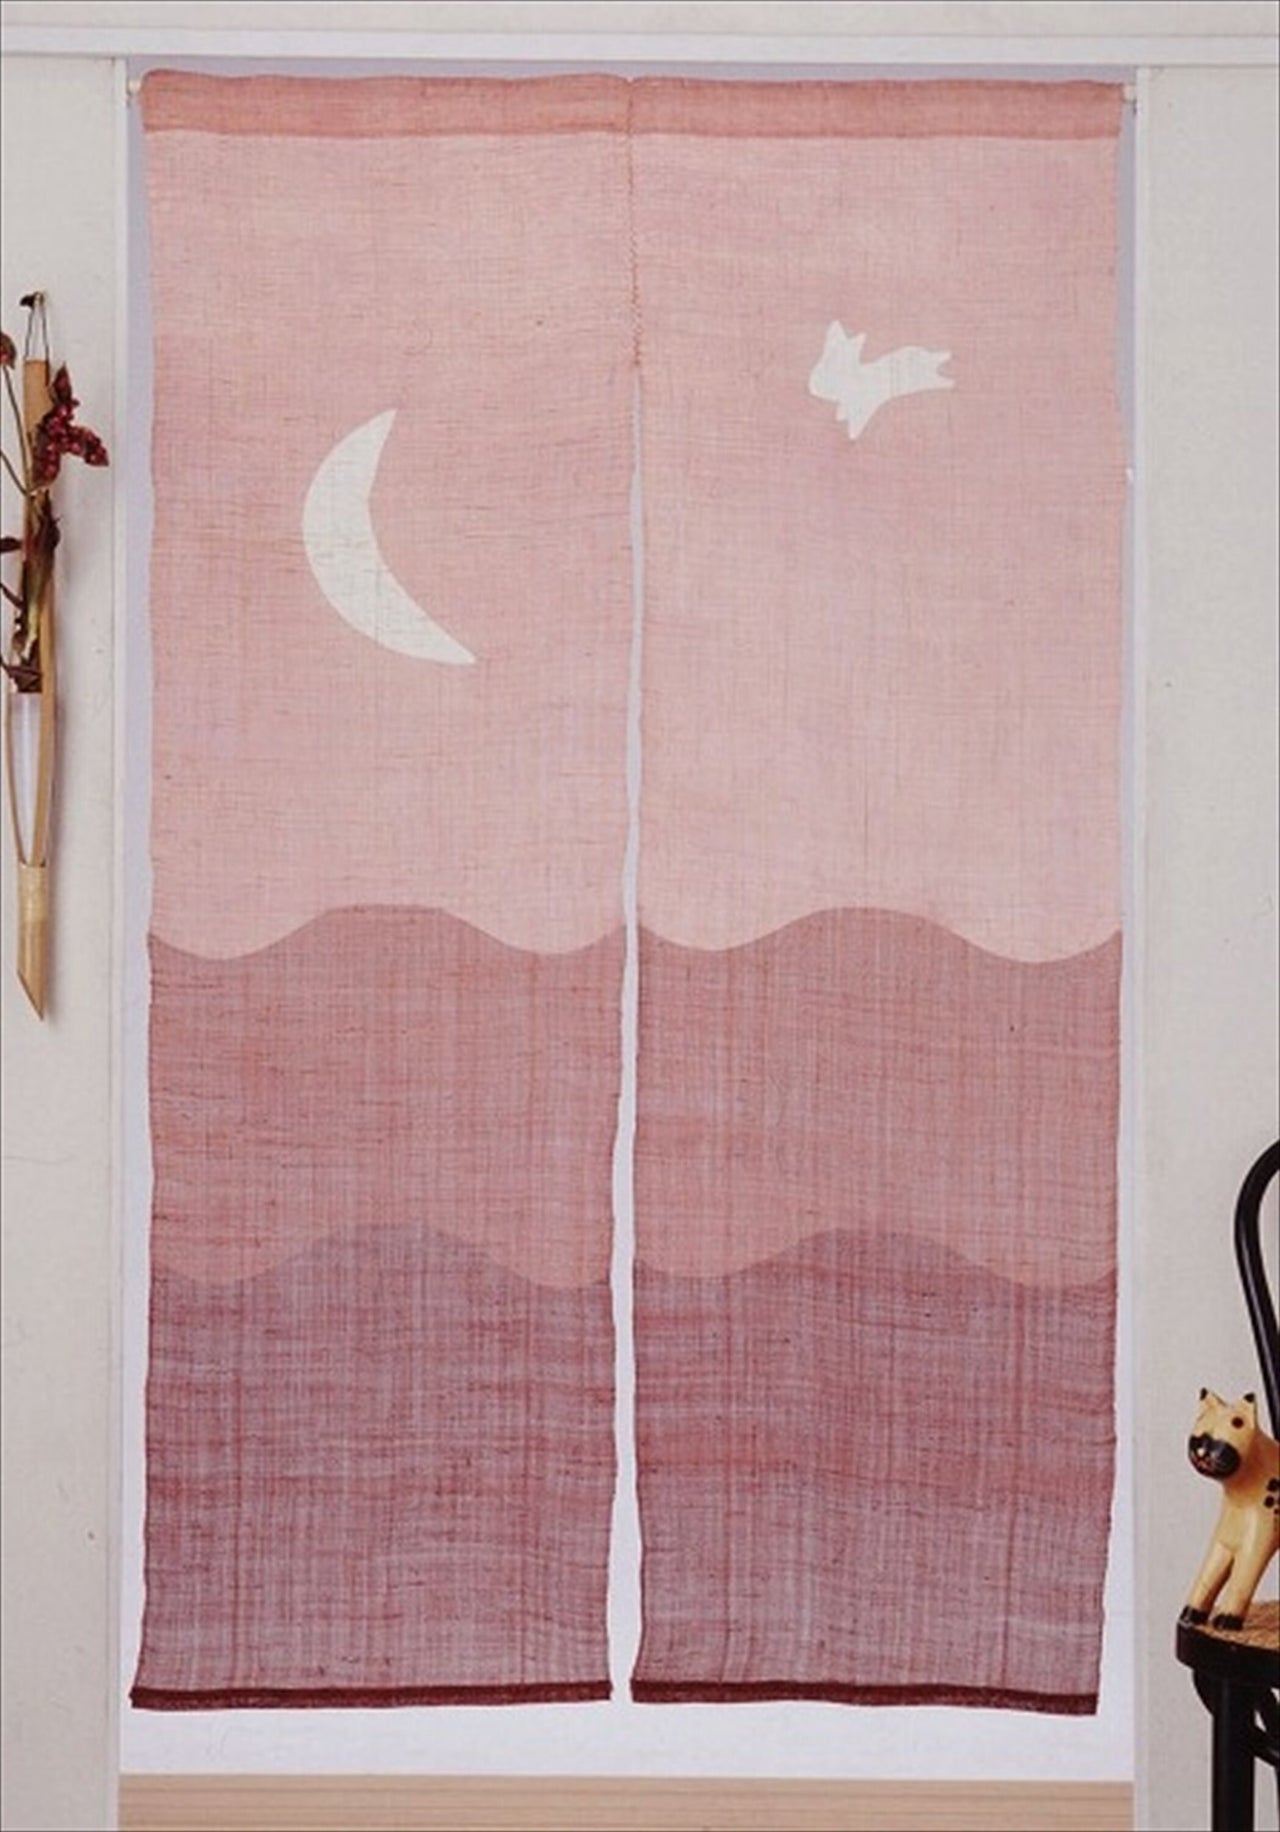 100％ Linen Hemp Rabbit Moon Japanese art Modern tapestry Kawaii 90×150cm Noren door curtain Wall hanging